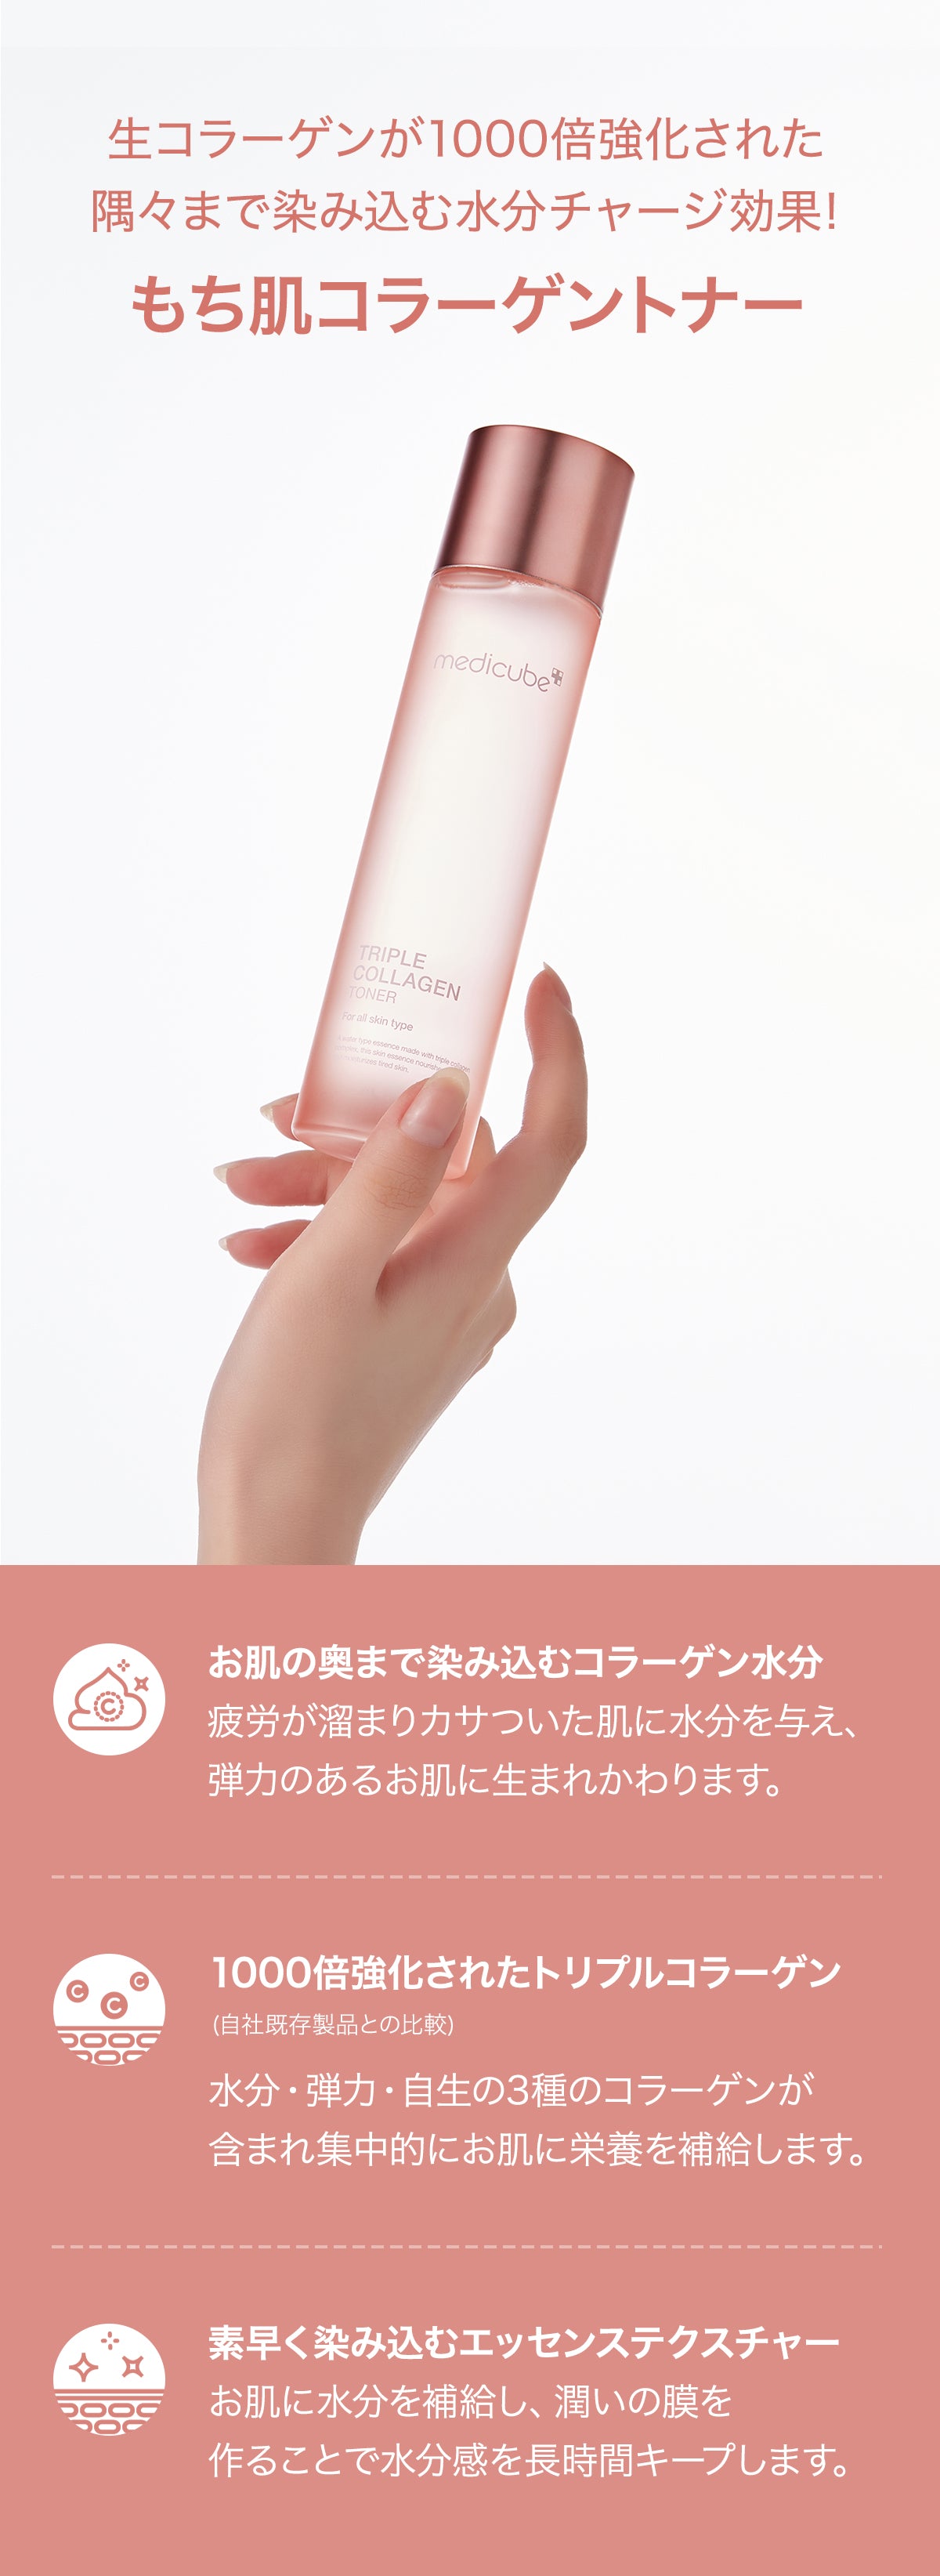 もち肌コラーゲントナー3.0 (コラーゲン化粧水) – MEDICUBEオンライン